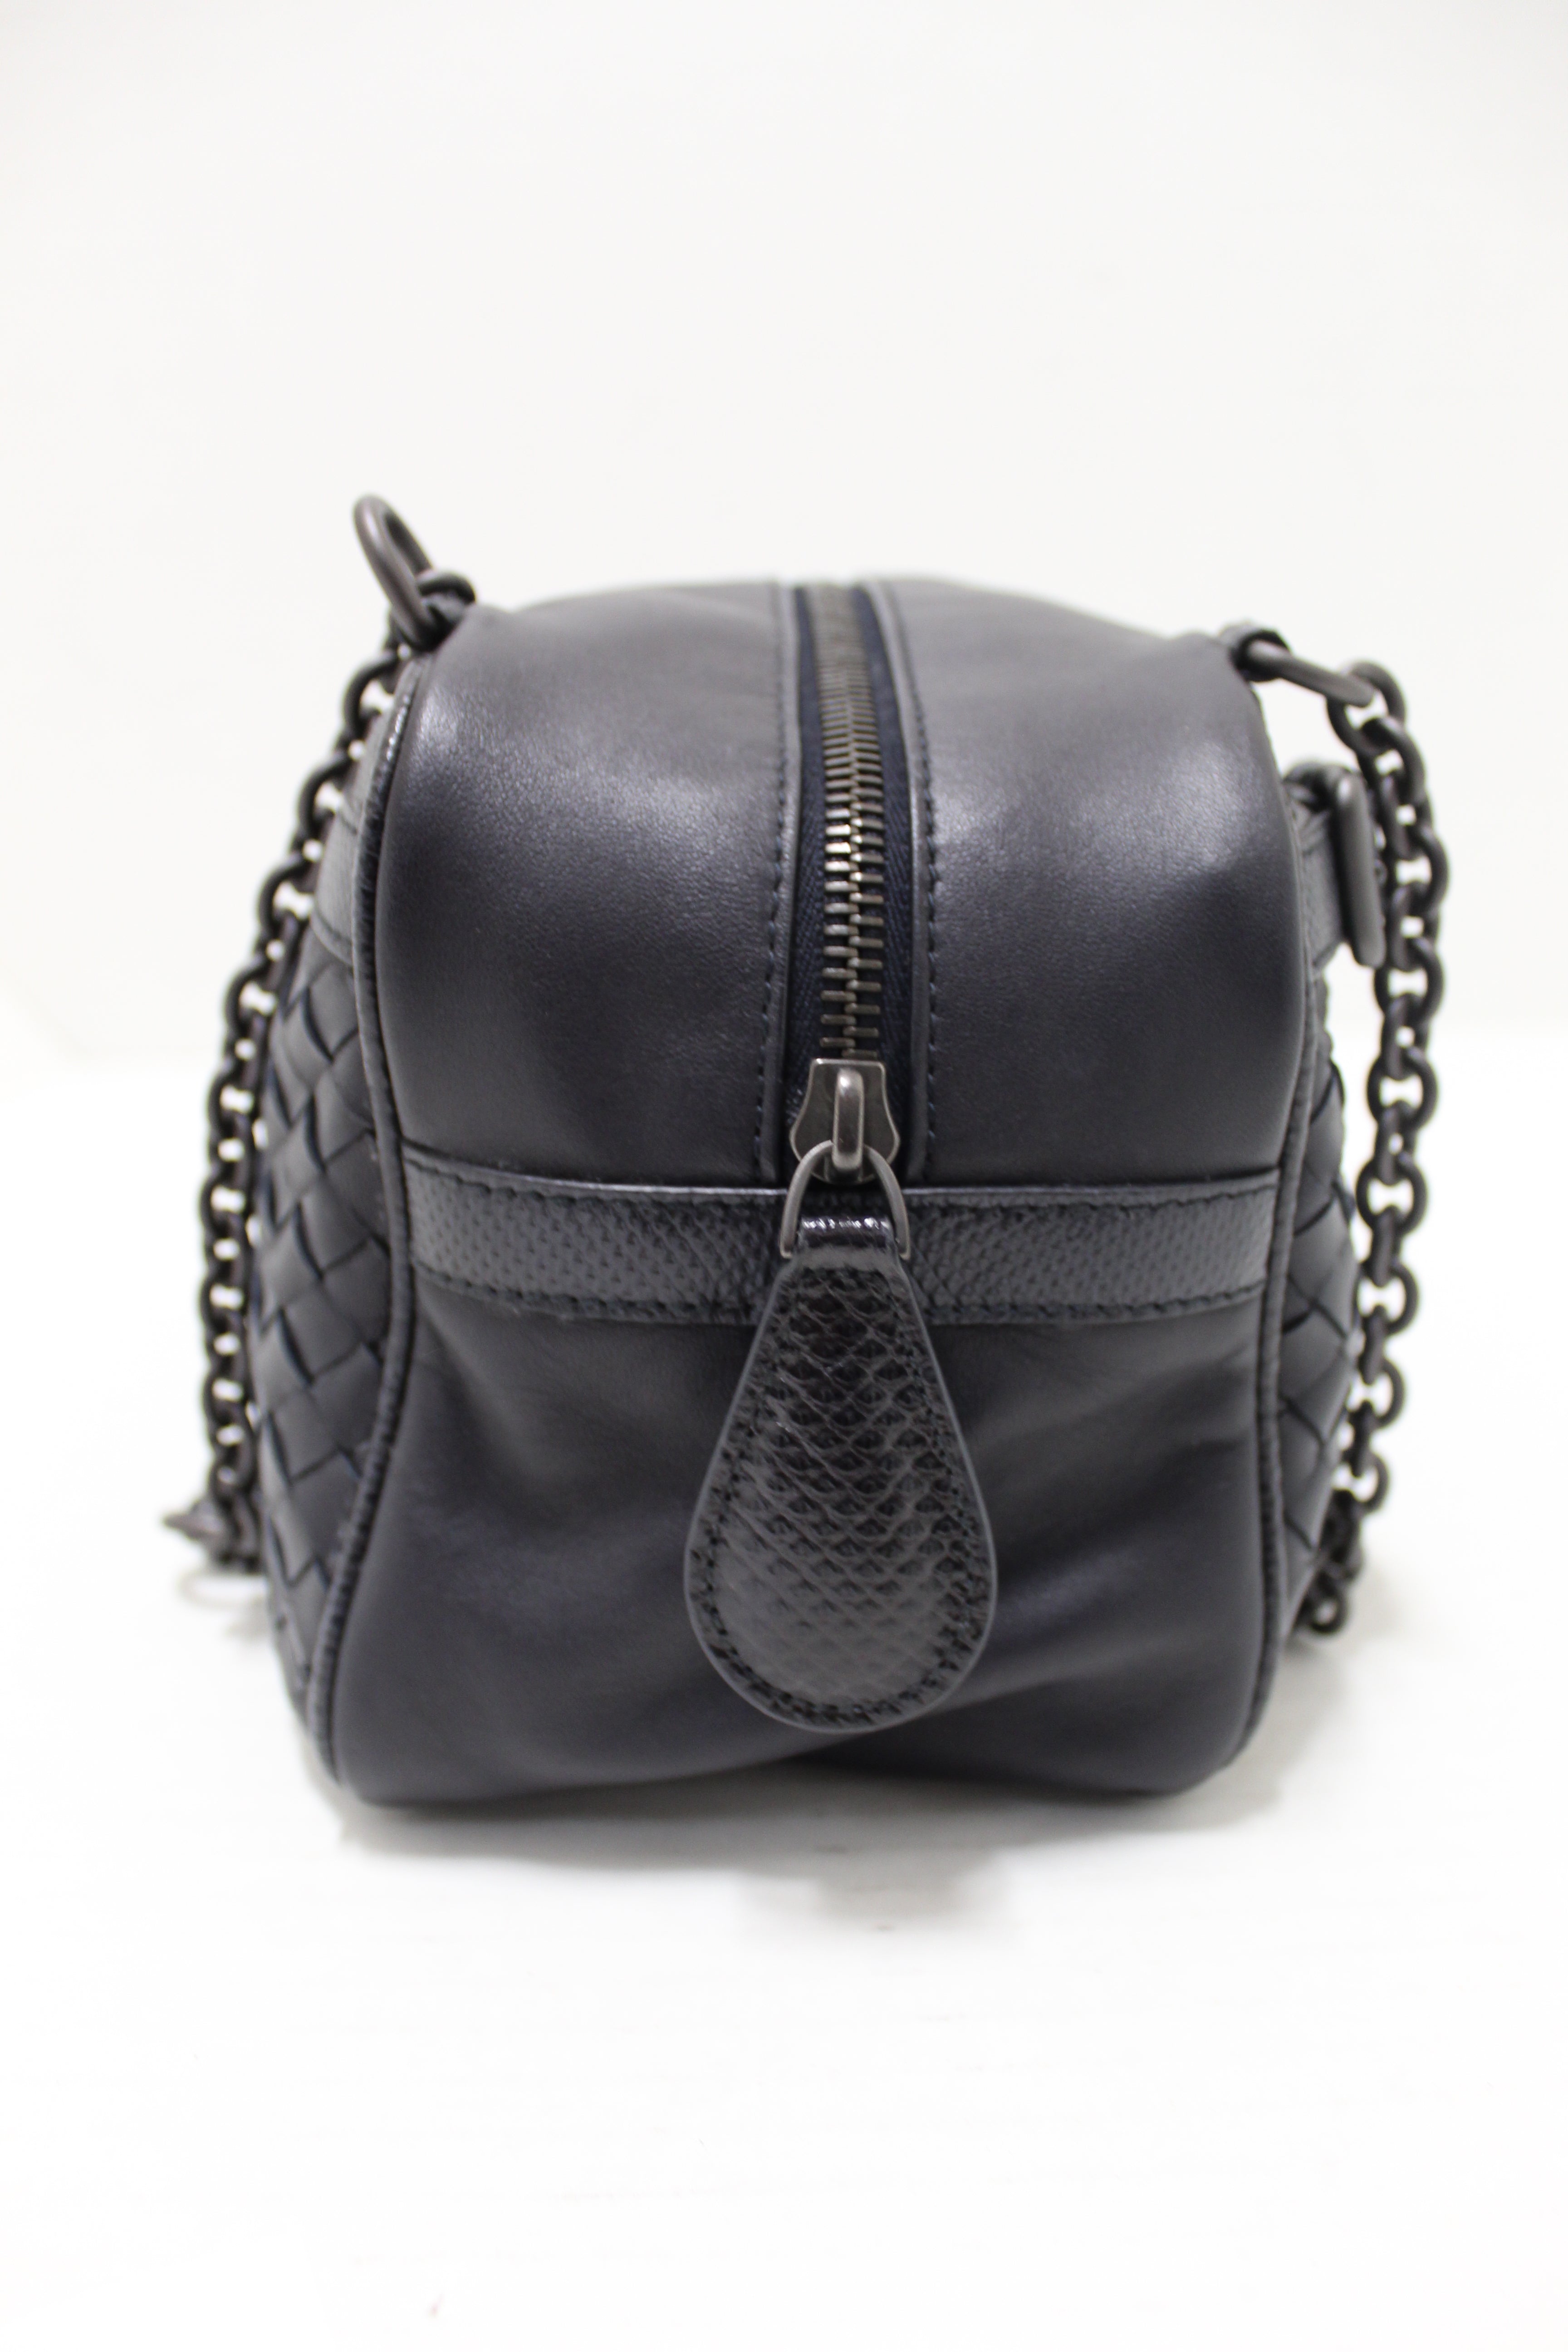 Authentic Bottega Veneta Black Nappa Intrecciato Woven Leather Double Chain Shoulder Bag